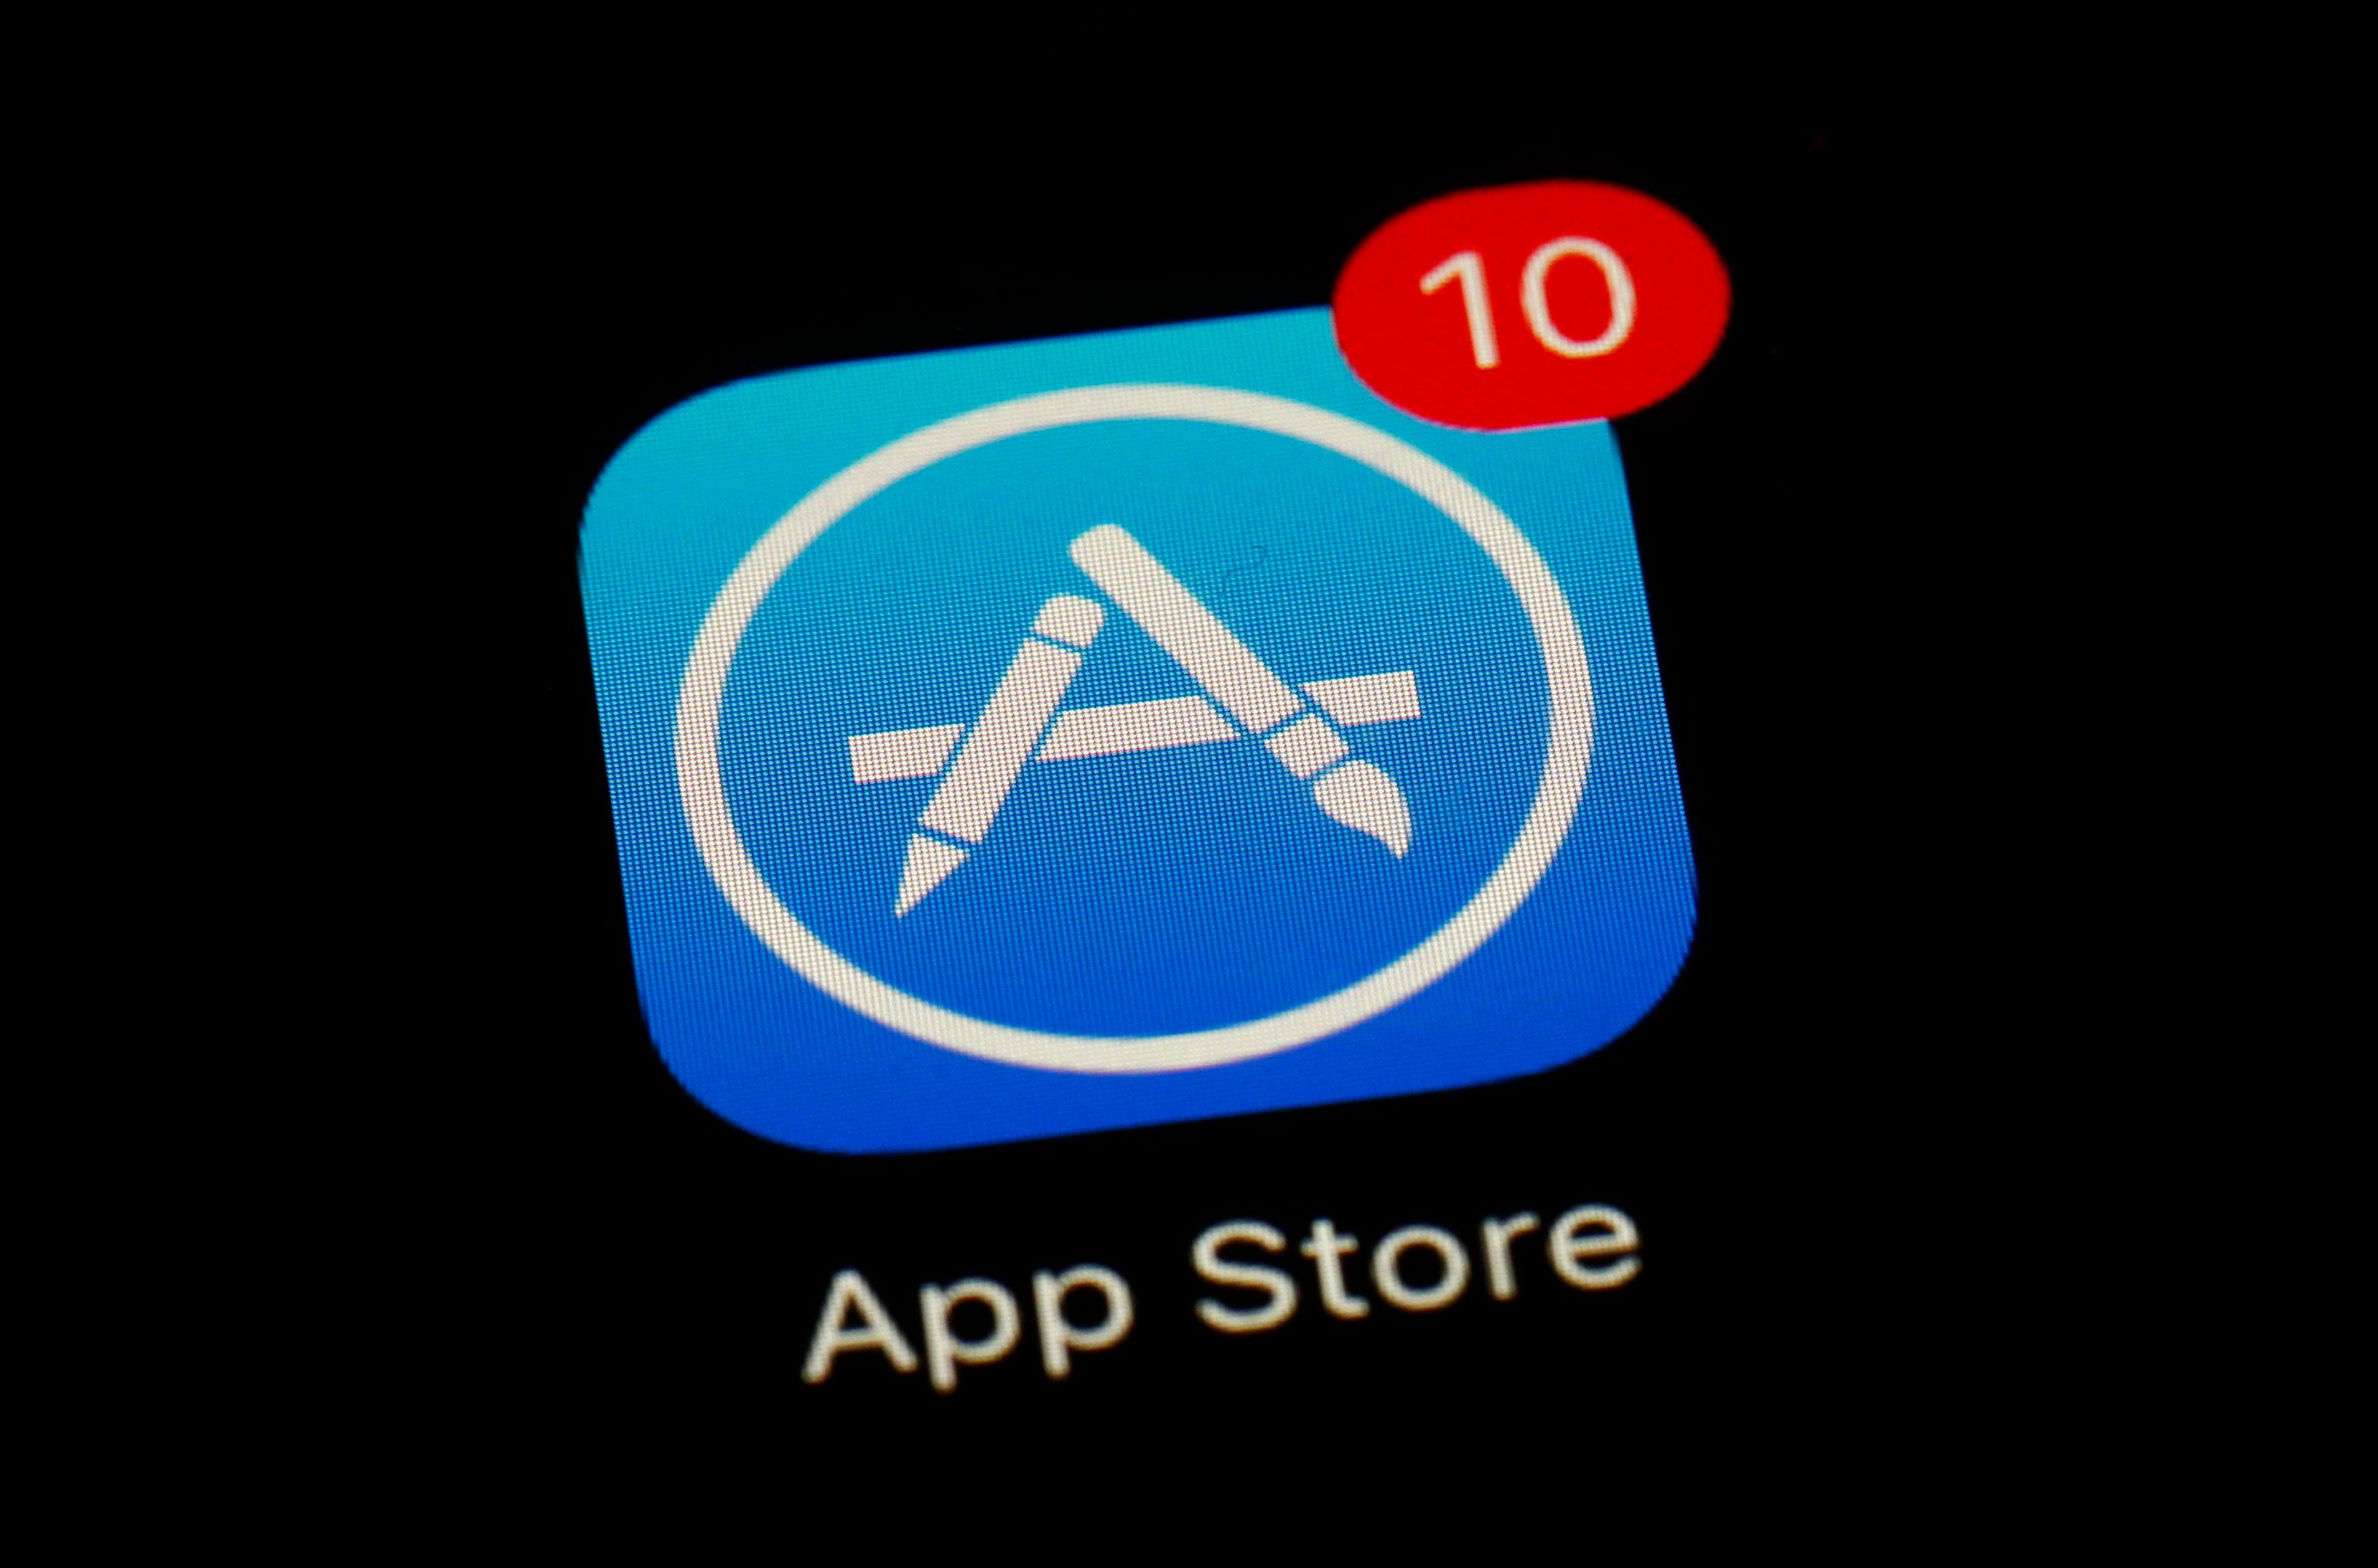 Estos servicios, que incluyen la App Store, han logrado una facturación cercana a los 24.000 millones de dólares. (Foto AP/Patrick Semansky)